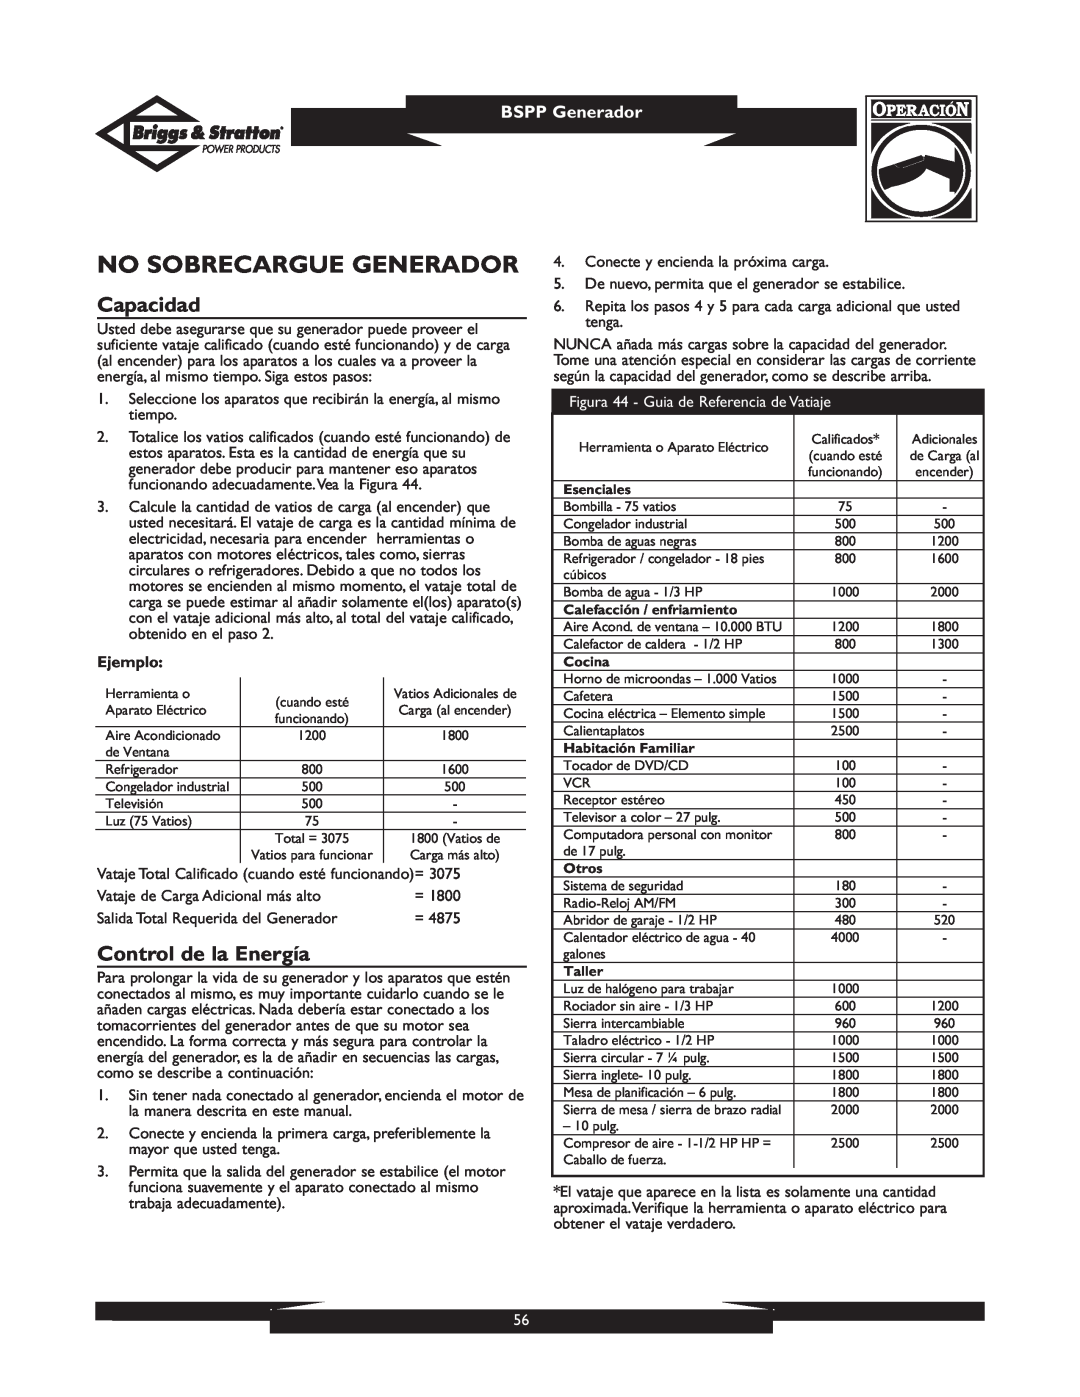 Briggs & Stratton PRO8000 owner manual No Sobrecargue Generador, Capacidad, Control de la Energía, BSPP Generador, Ejemplo 